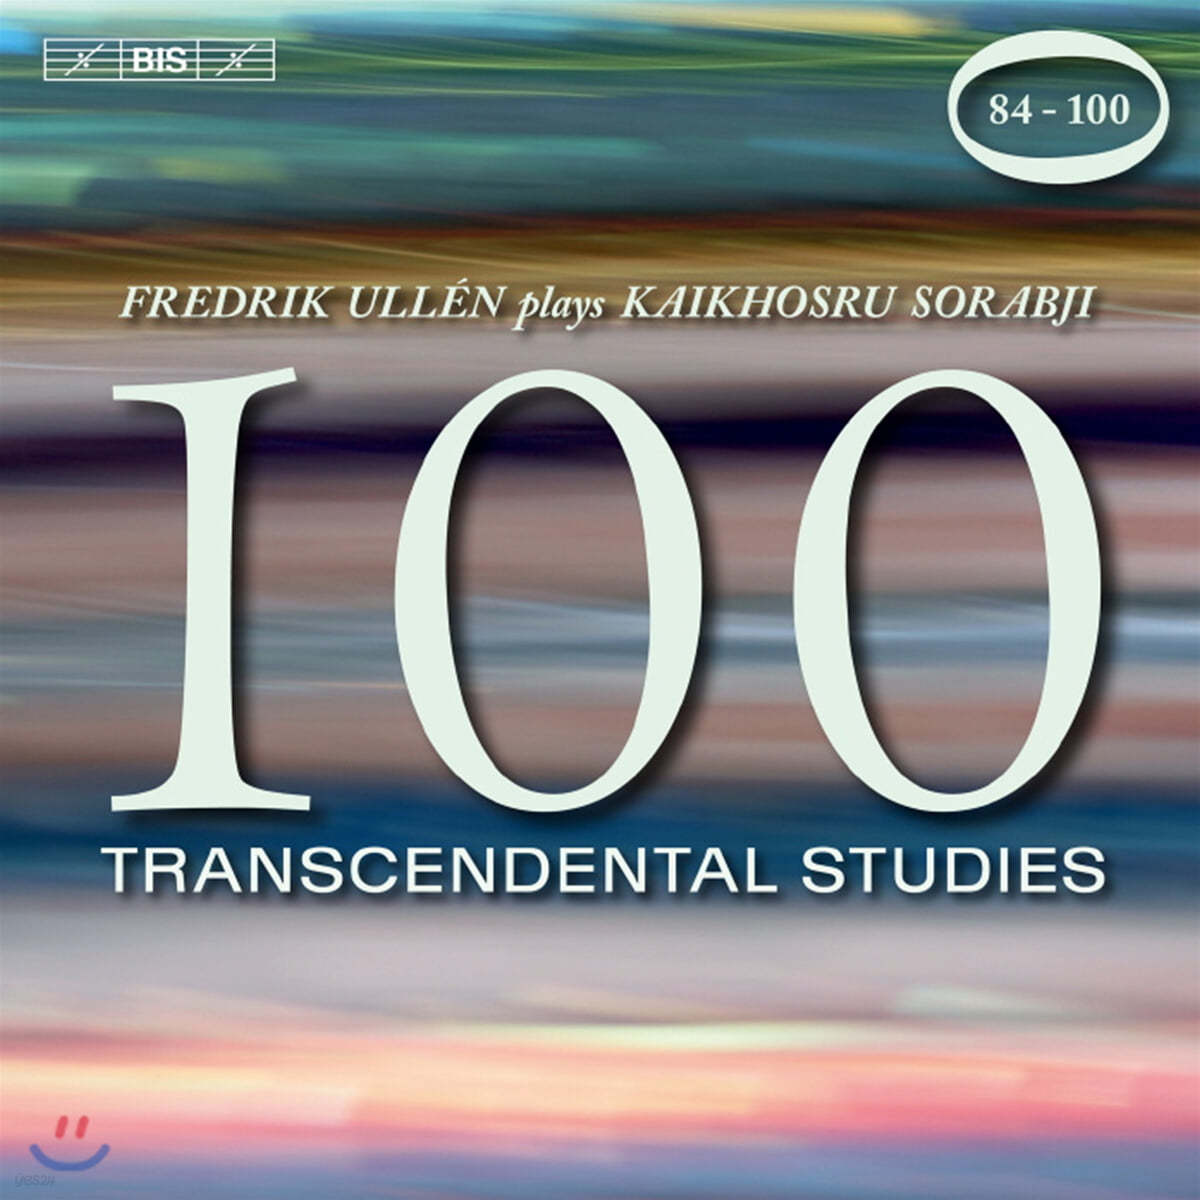 Fredrik Ullen 카이코스루 소랍지: 100 초절기교 연습곡 84-100번 (Kaikhoshru Sorabji: 100 Transcendental Studies) 